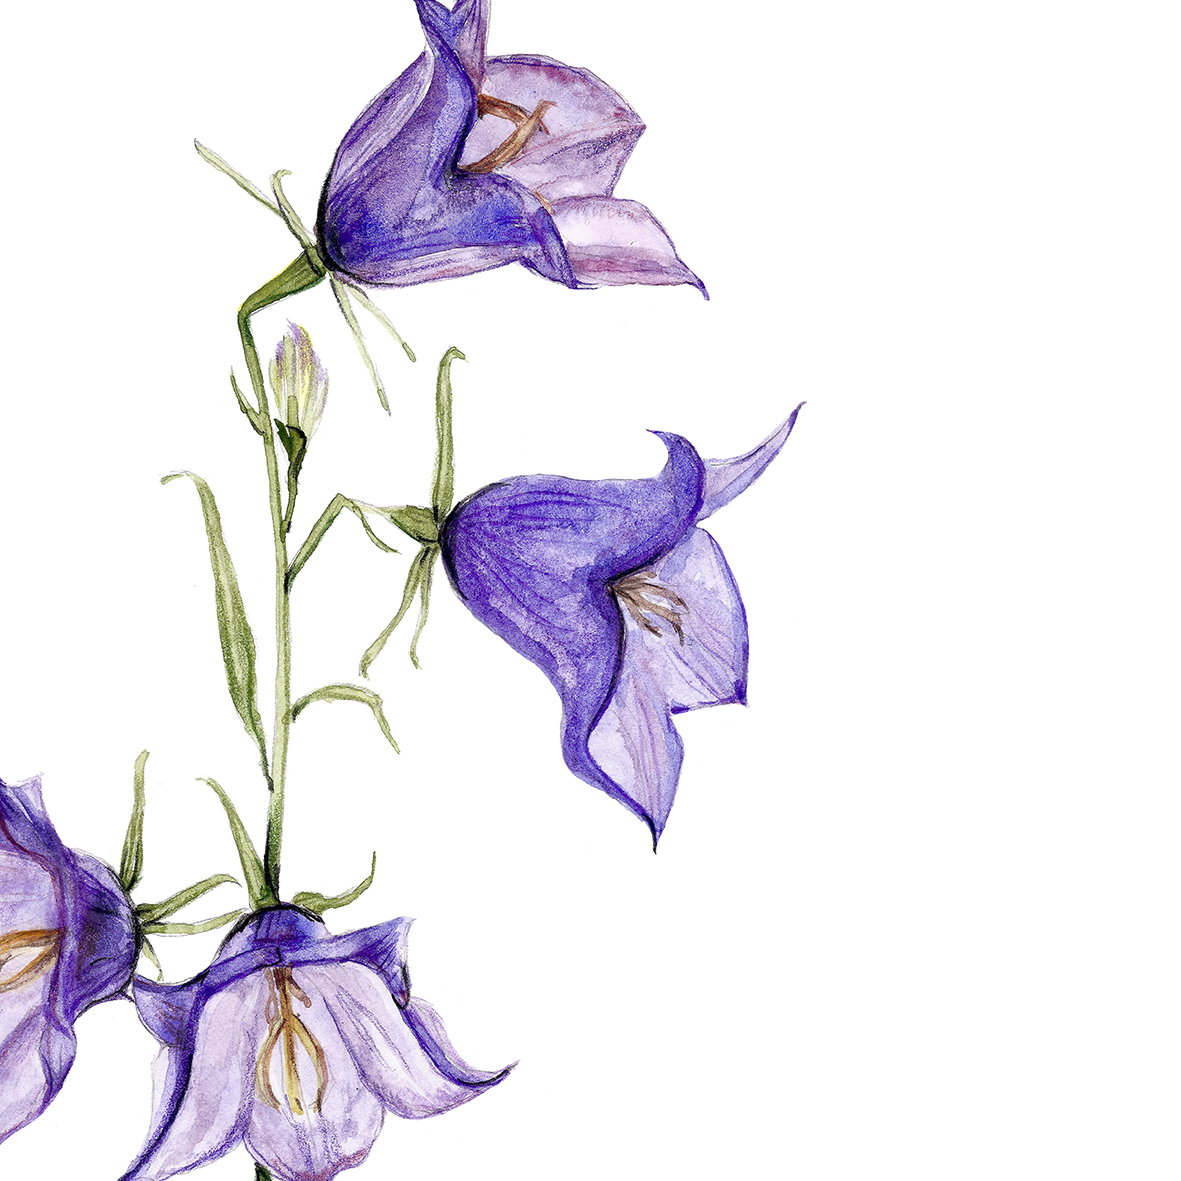 Glockenblume aus meinem Garten Poster Kunstdruck Pflanzenposter Zeichnung 2